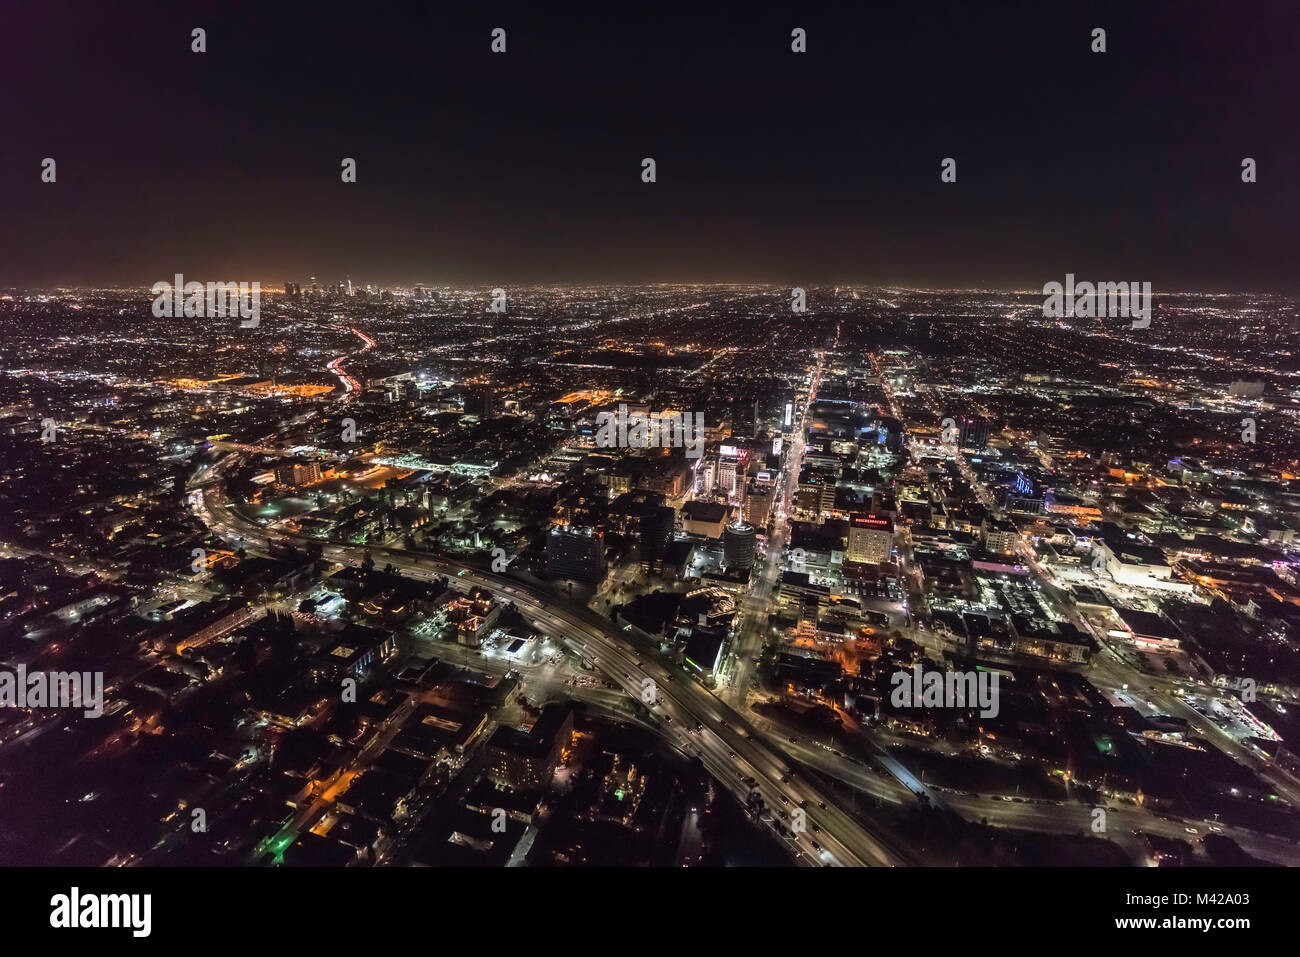 Los Angeles, Californie, USA - 11 Février 2018 : nuit vue aérienne de l'autoroute 101 Hollywood, édifices du centre-ville et les rues urbaines. Banque D'Images